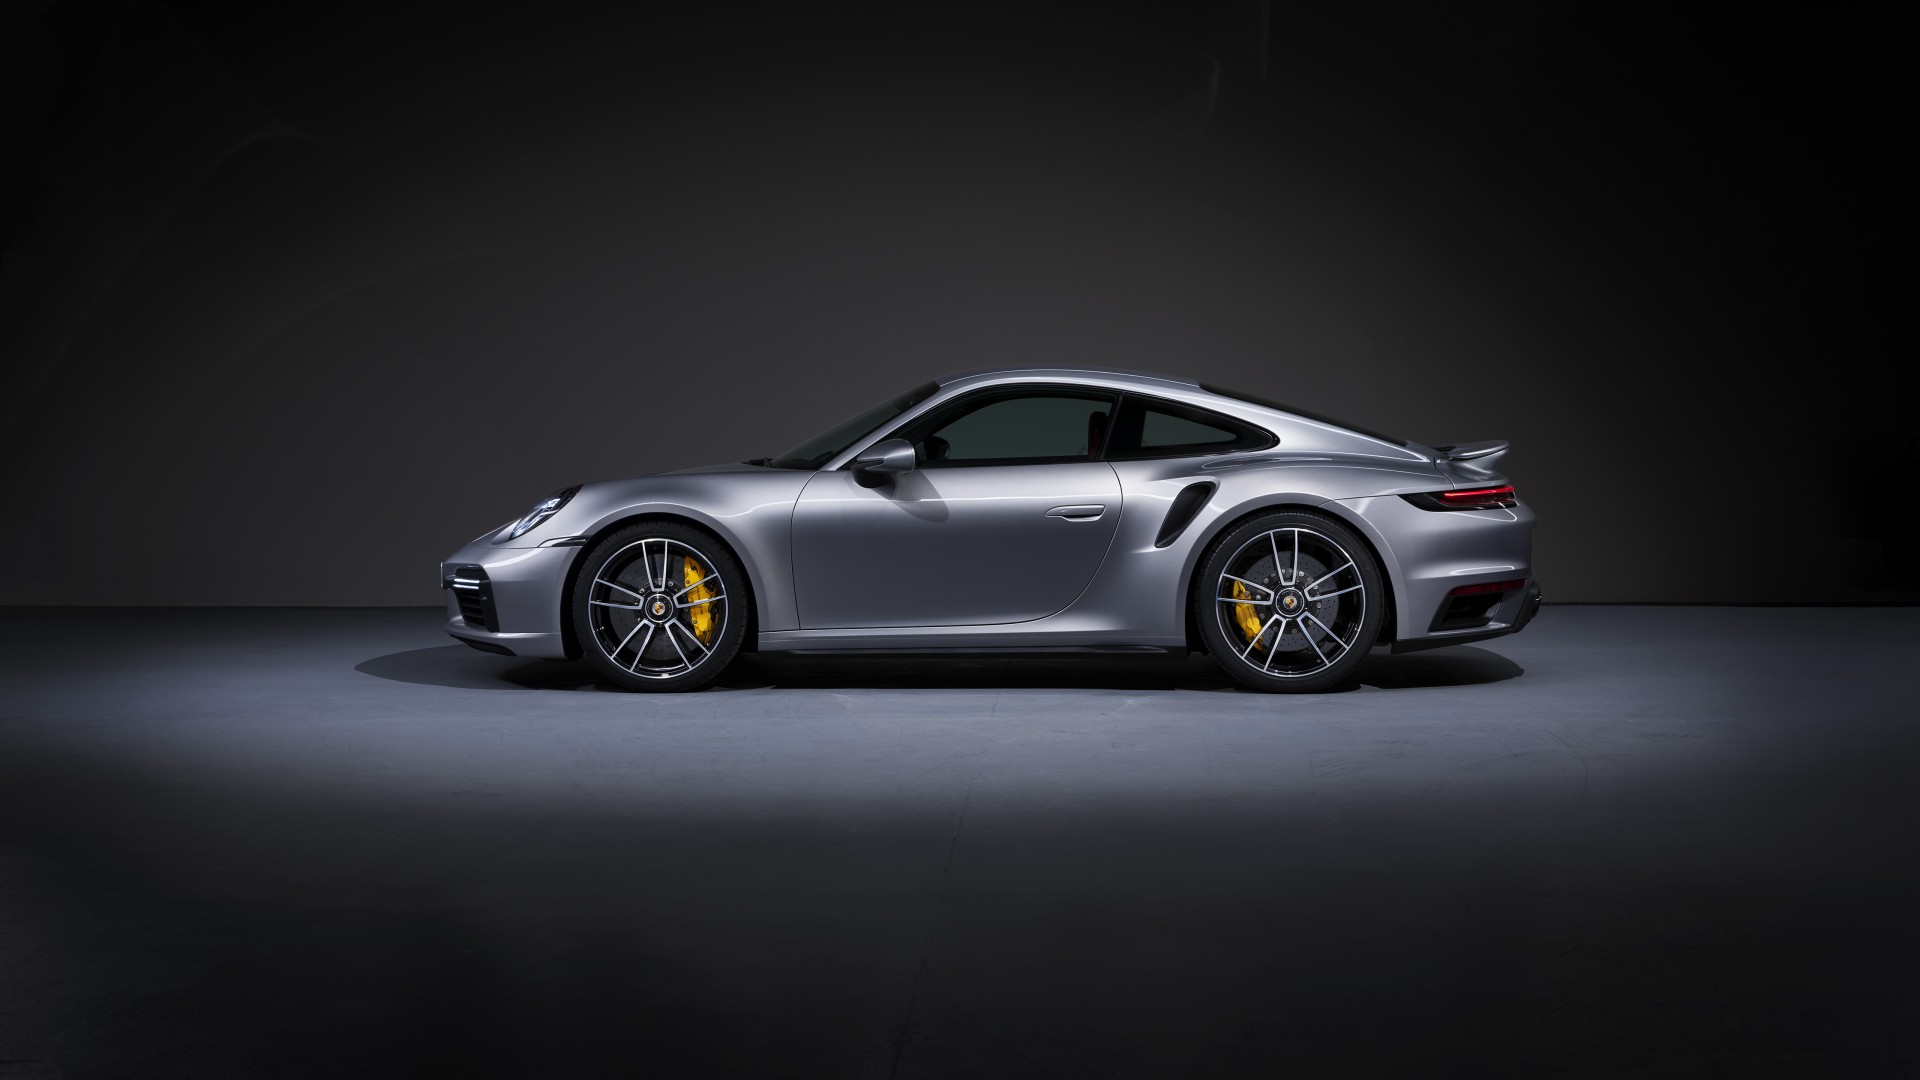 Den porsche 911 prägt die aura der erfahrung und nicht der glanz des designs. Porsche 911 Turbo S 2020 5K 11 Wallpaper | HD Car